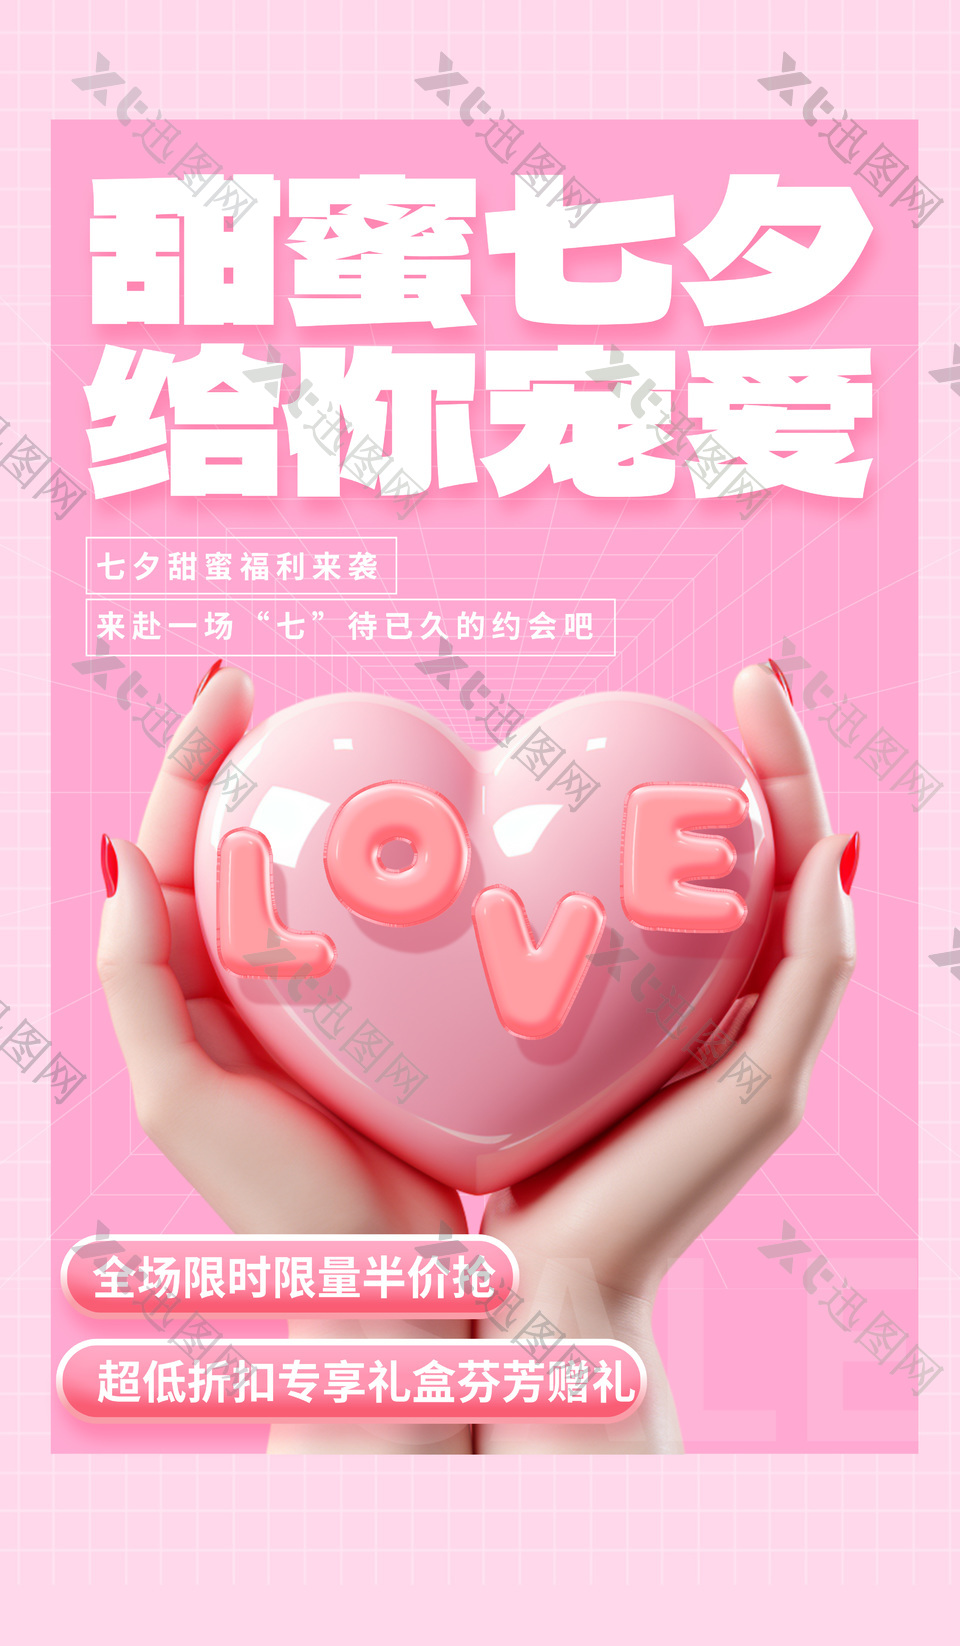 七夕甜蜜福利半价粉色3d立体促销海报设计